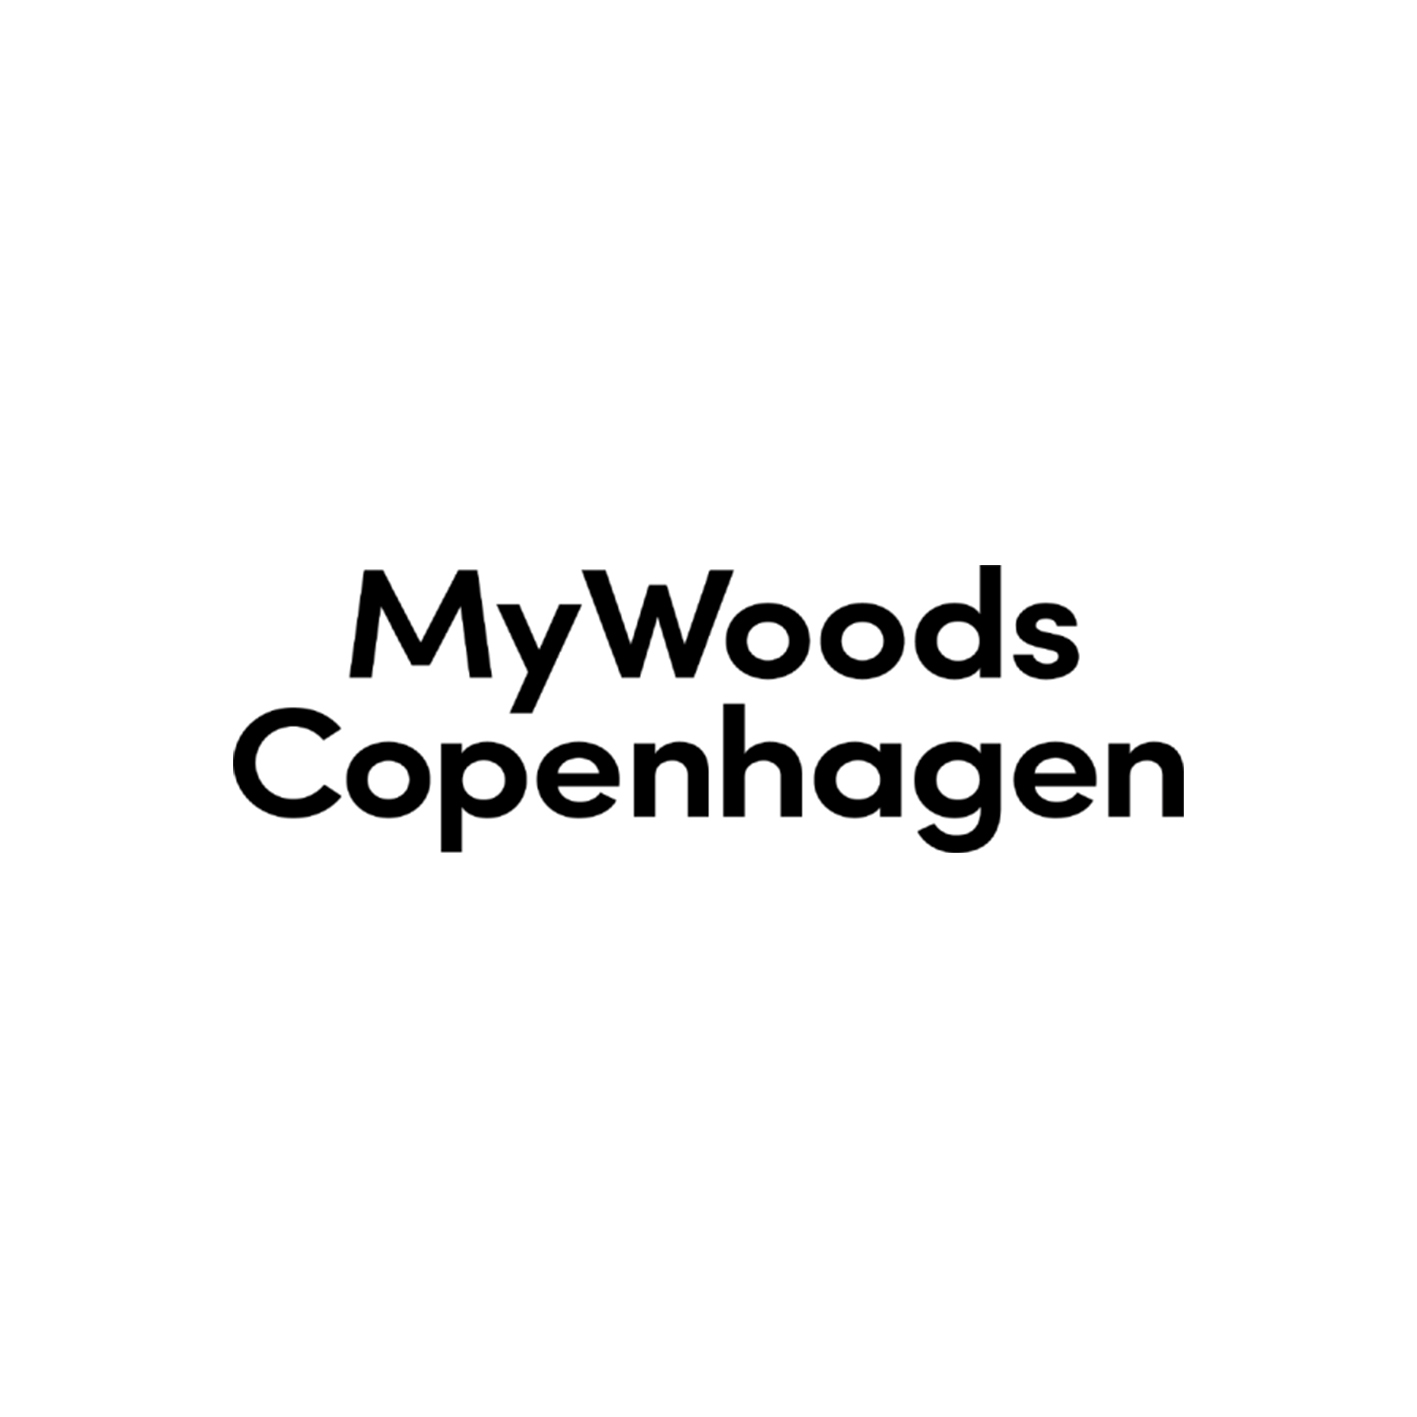 My woods copenhagen logo